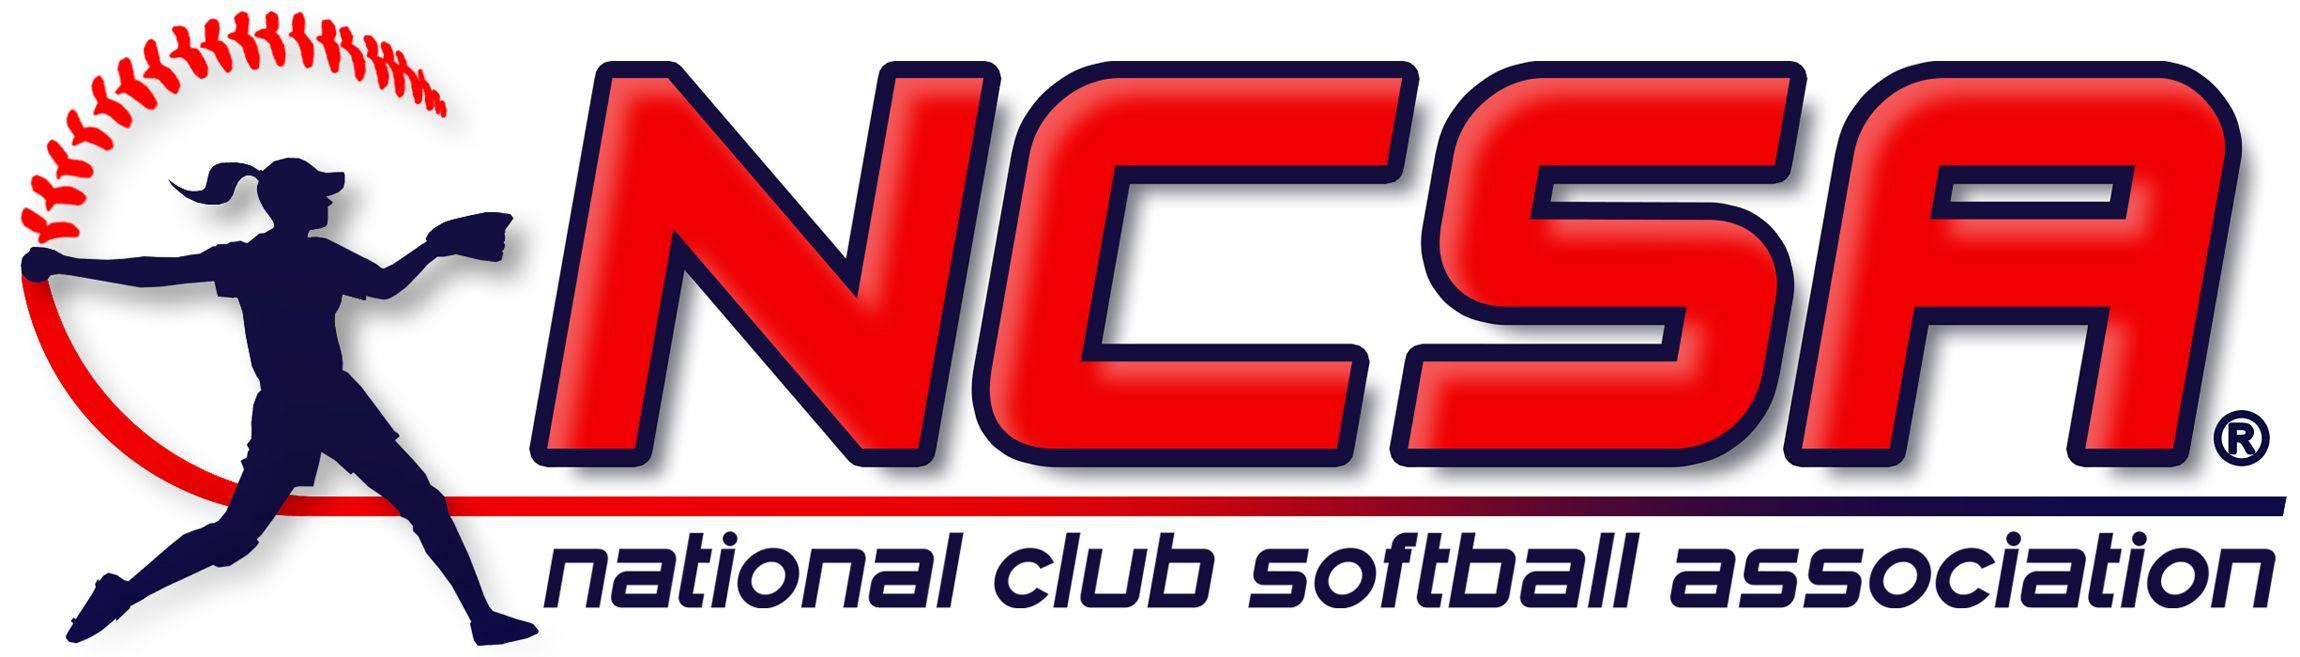 NCSA Logo - NCSA